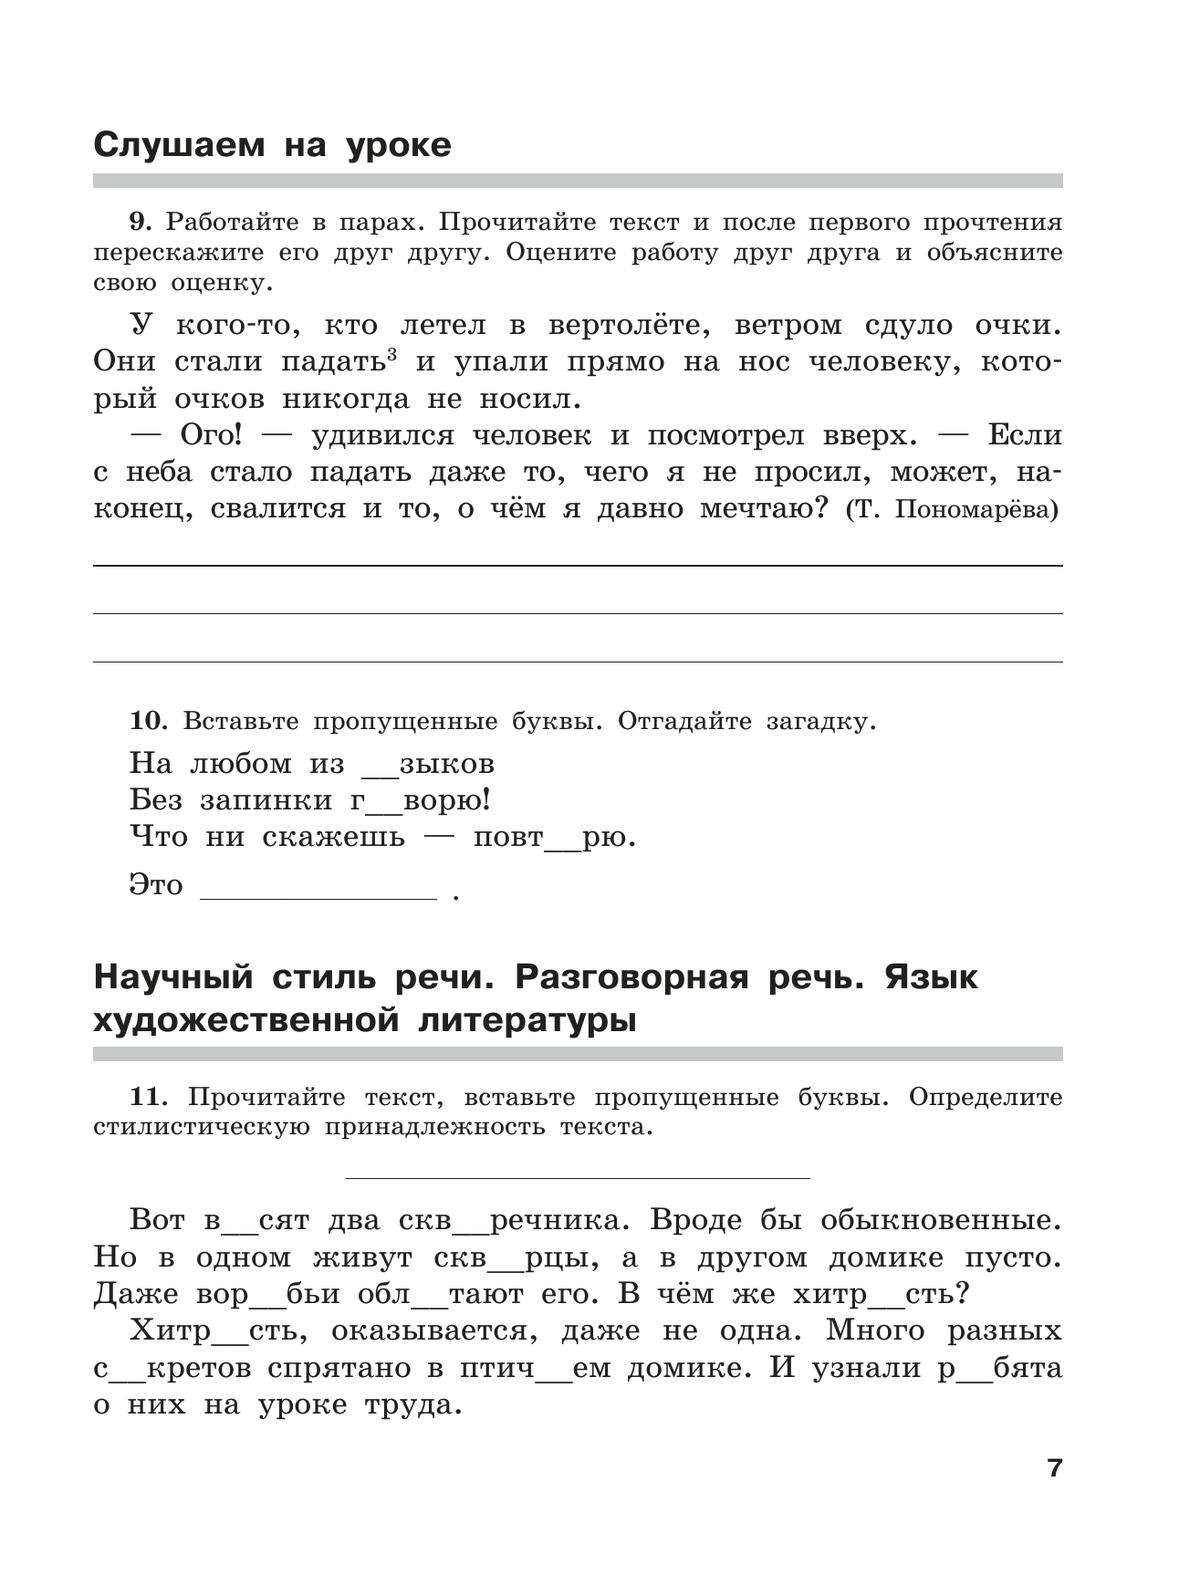 Скорая помощь по русскому языку. Рабочая тетрадь. 5 класс. В 2 ч. Часть 1 3